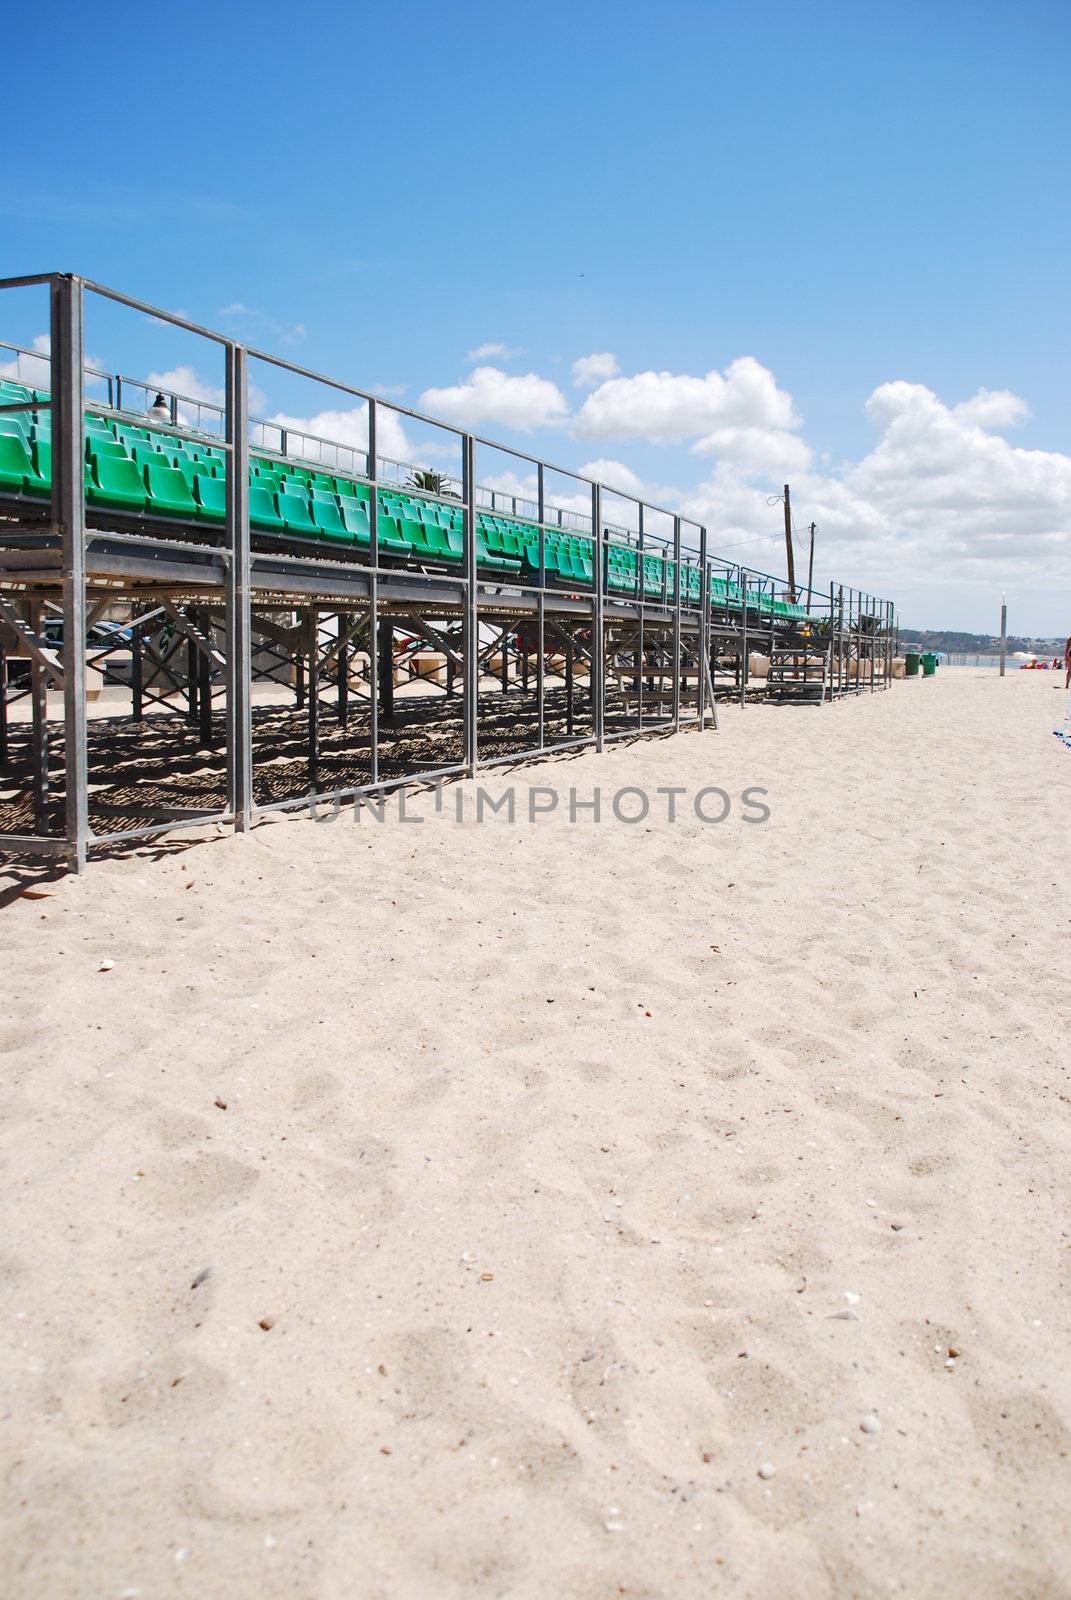 Stadium green bleachers (space on sand) by luissantos84